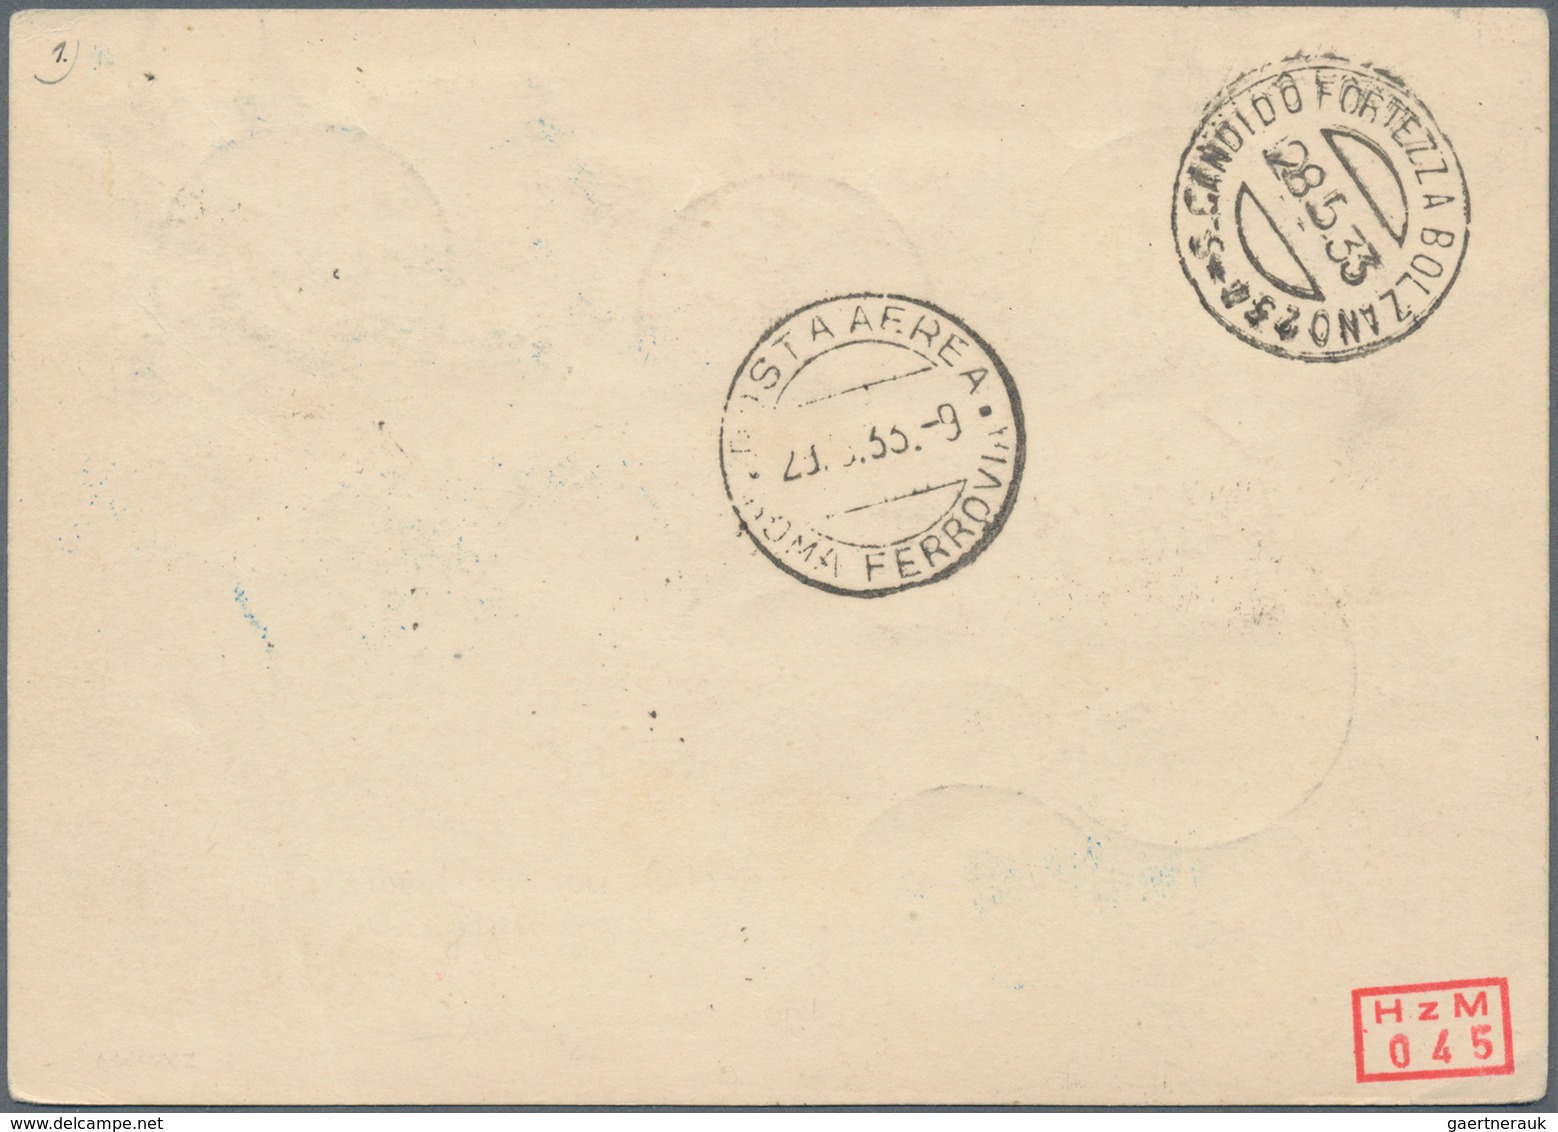 Zeppelinpost Europa: 1933, ITALIENFAHRT, Italienische Post Abwurf NEAPEL (selten!), Vertragsstaatenk - Sonstige - Europa